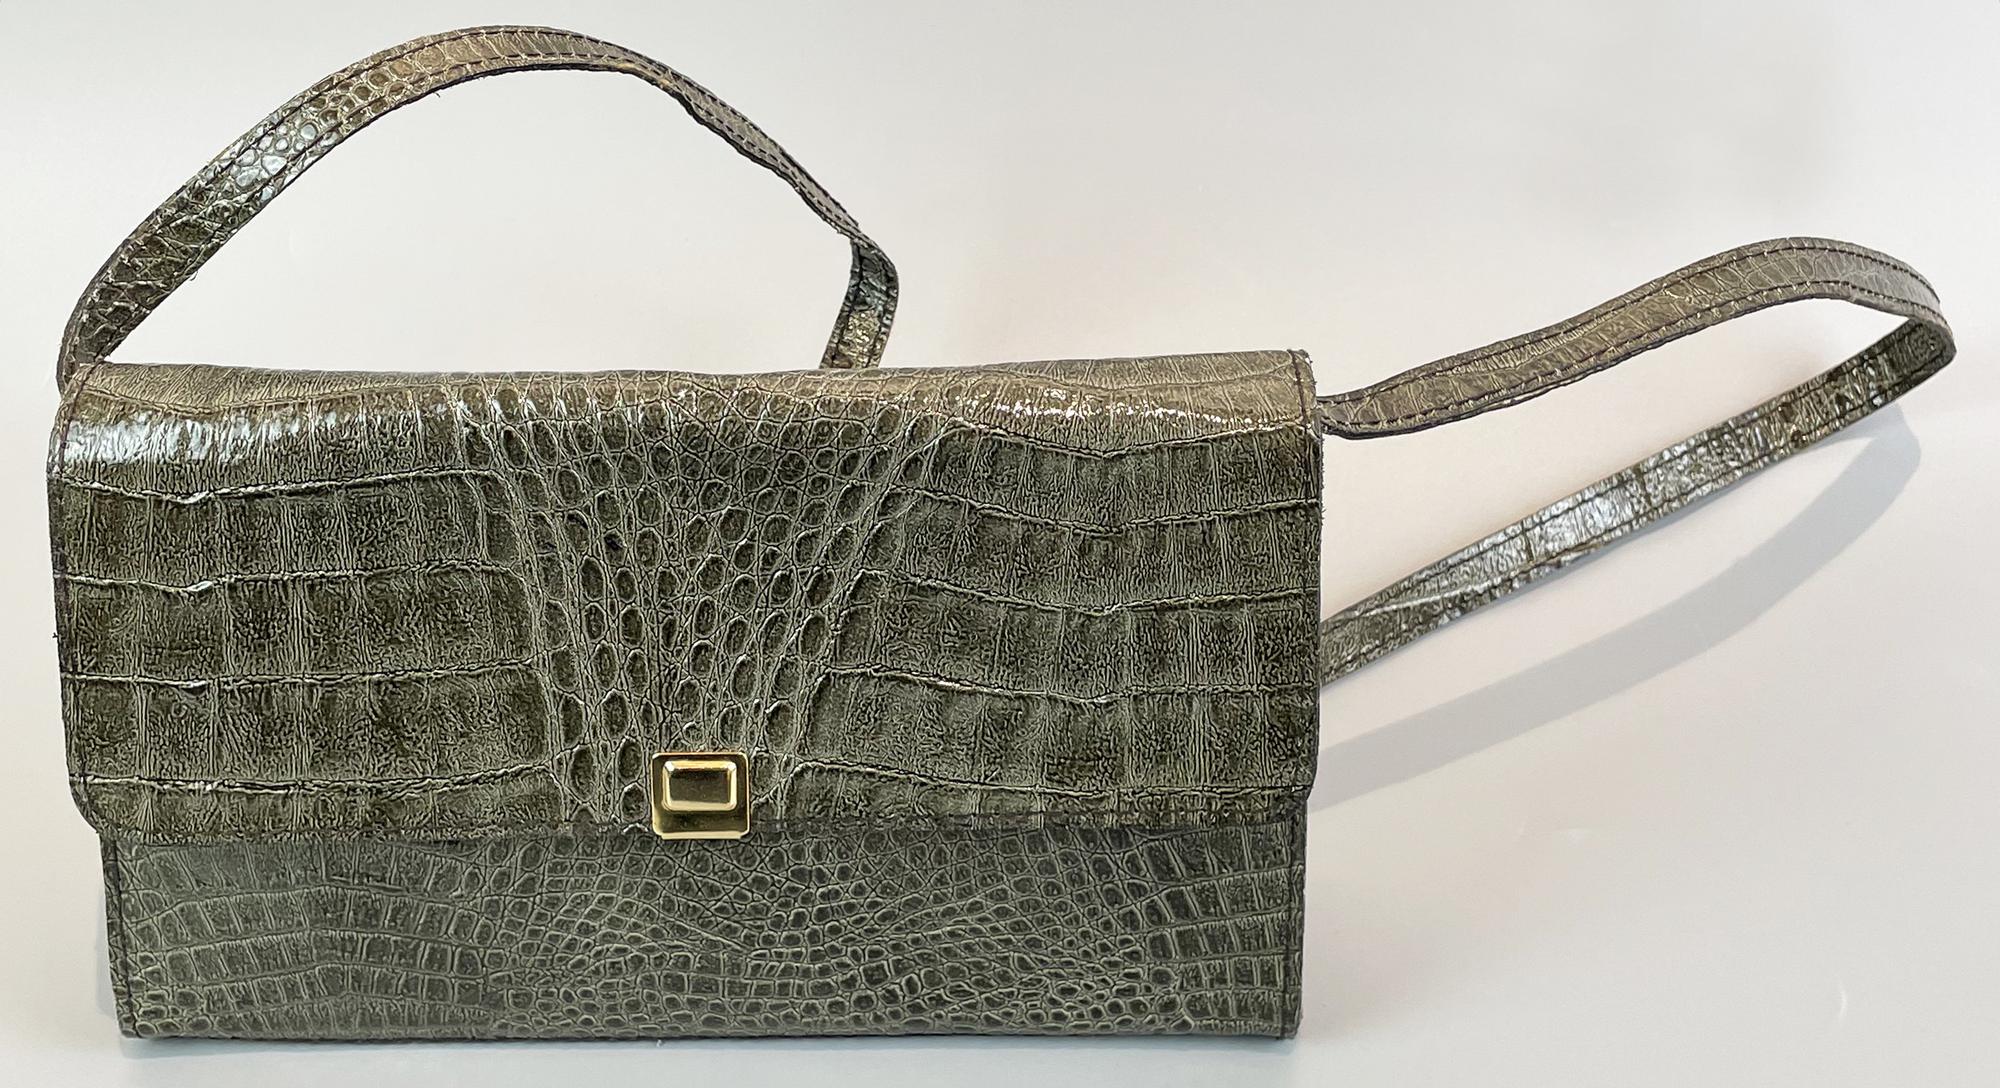 CROCODILE BAG Description: Olive green crocodile bag. Removable strap. No...